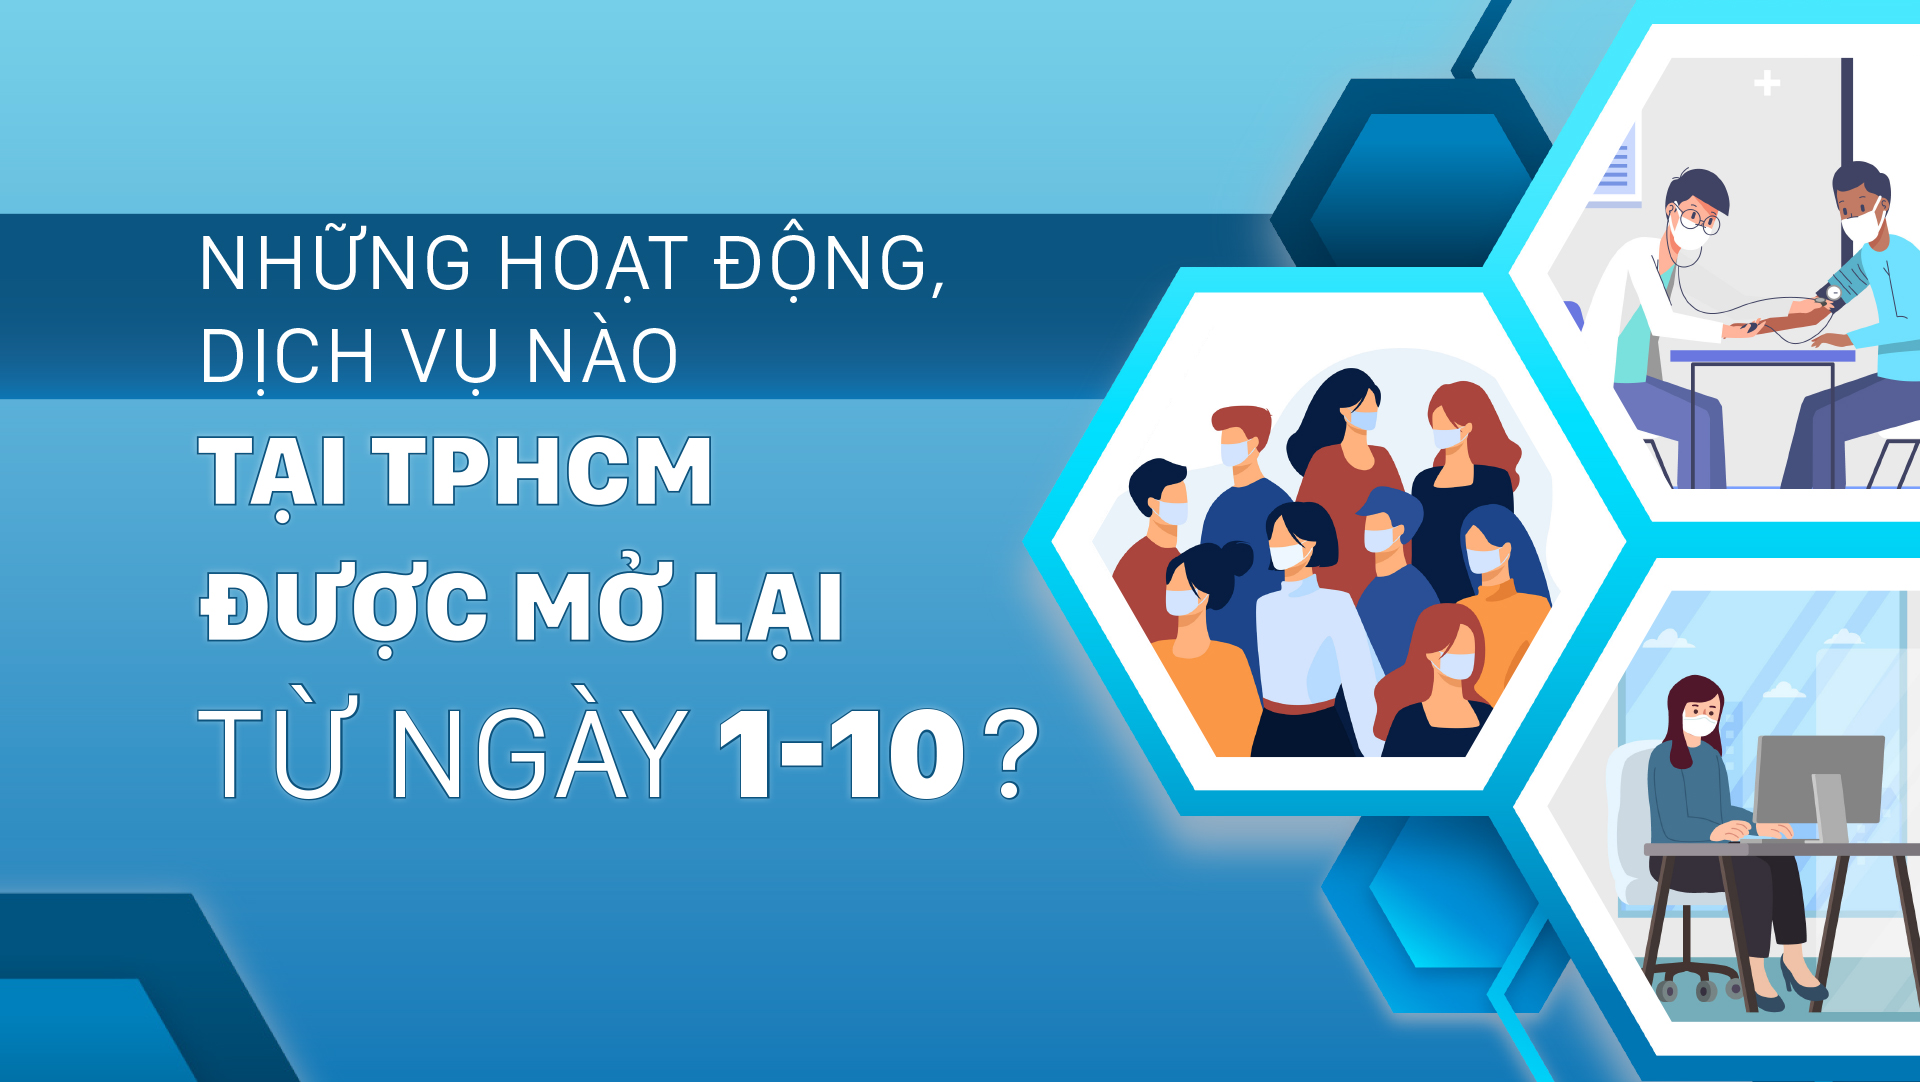 Những hoạt động, dịch vụ nào tại TPHCM được mở lại từ ngày 1-10?